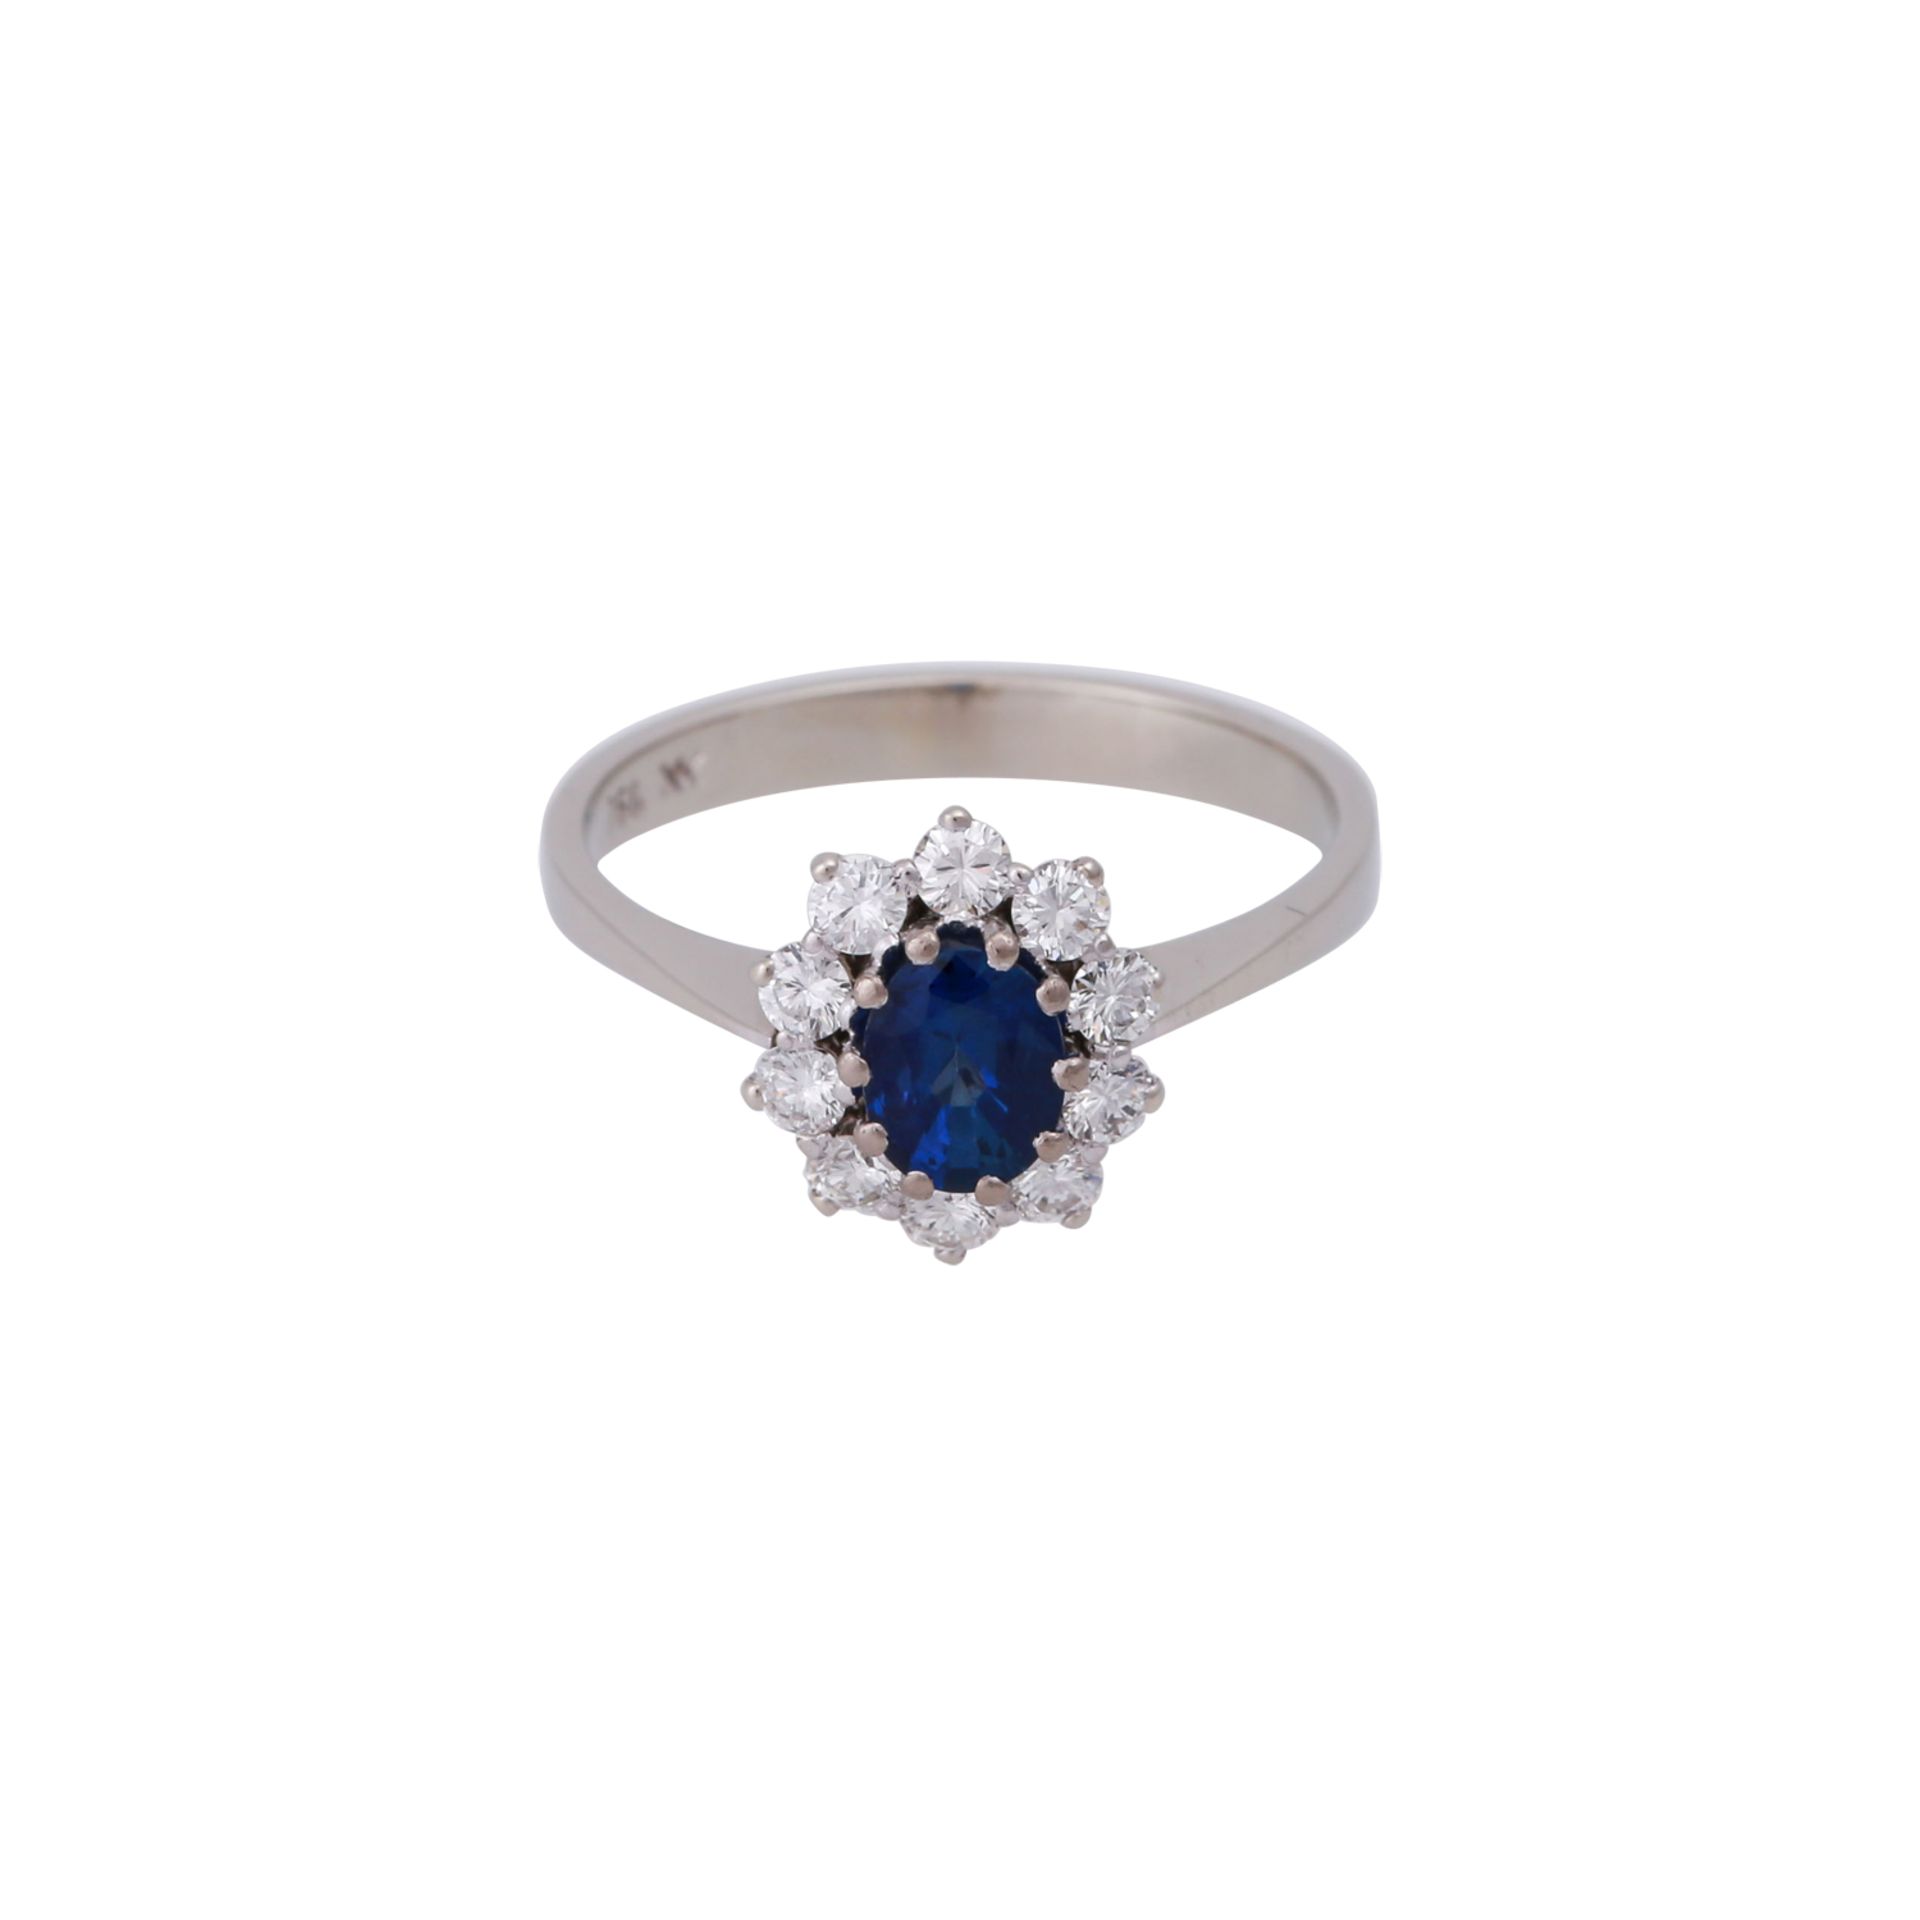 Ring mit Saphir und Brillantenvon zus. ca. 0,4 ct, gute Farbe u. Reinheit, Saphir ca. 1 ct, WG